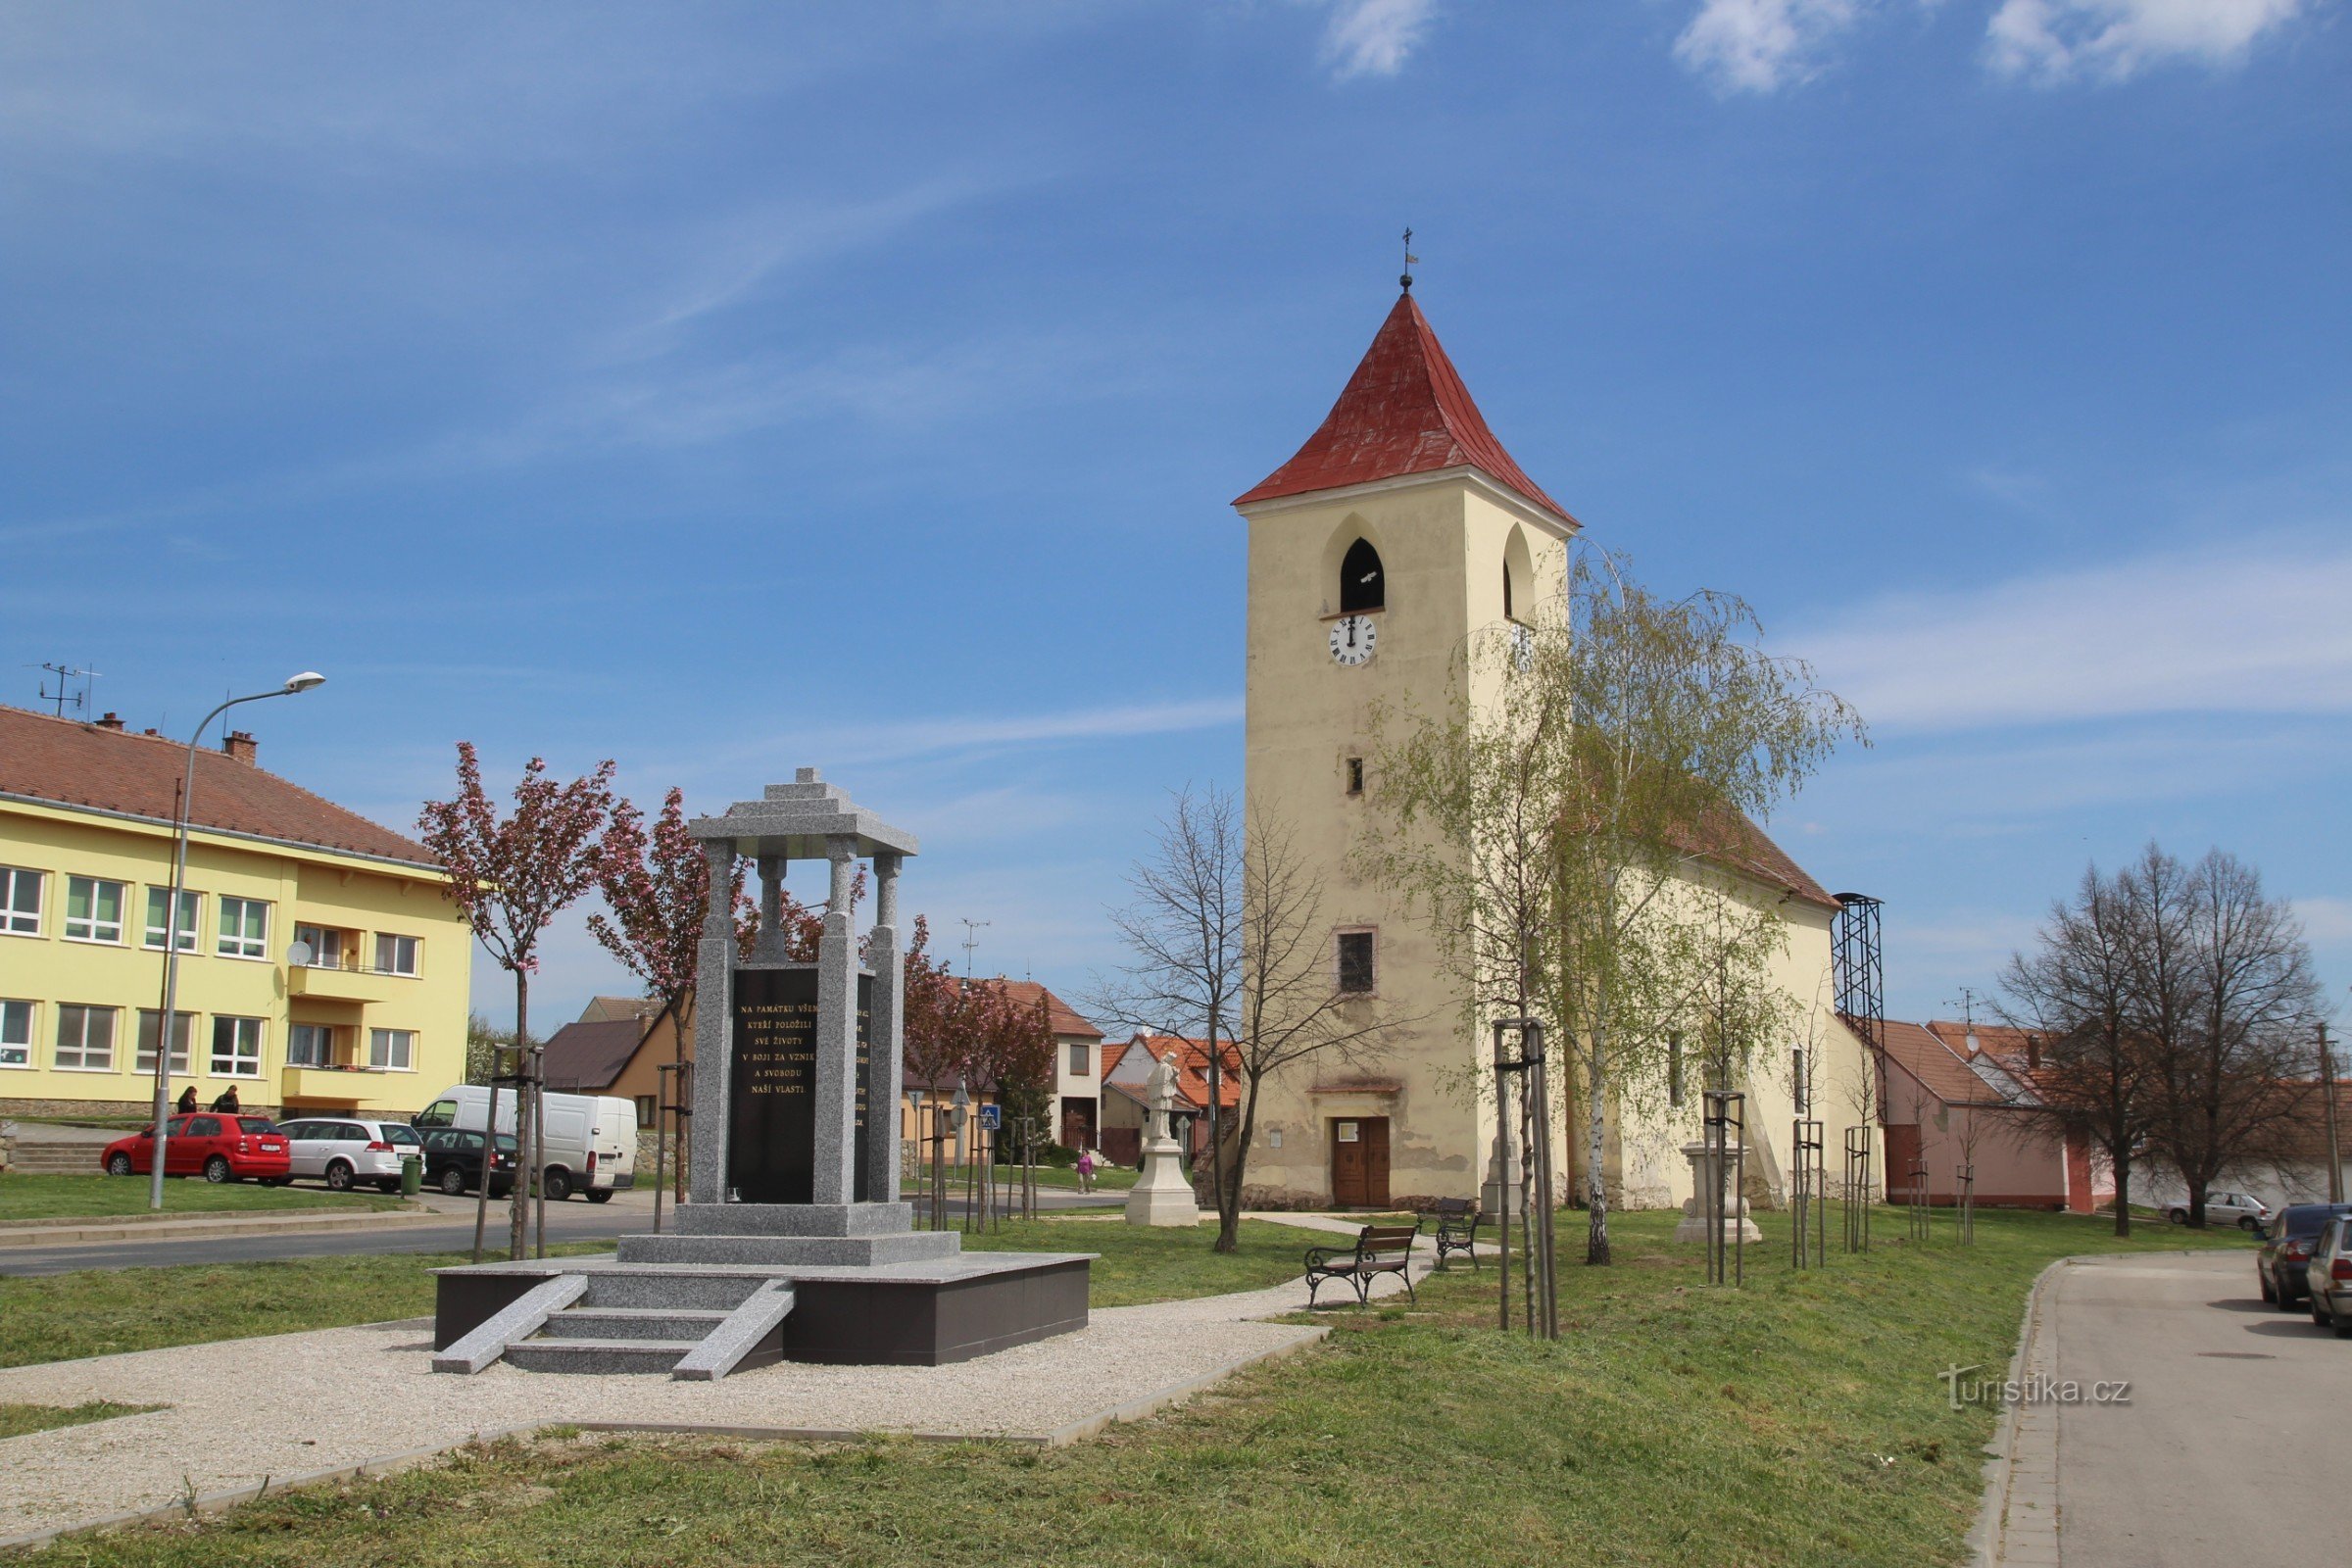 Semi-reboque Sedlecká com a igreja de St. Bem-vindo